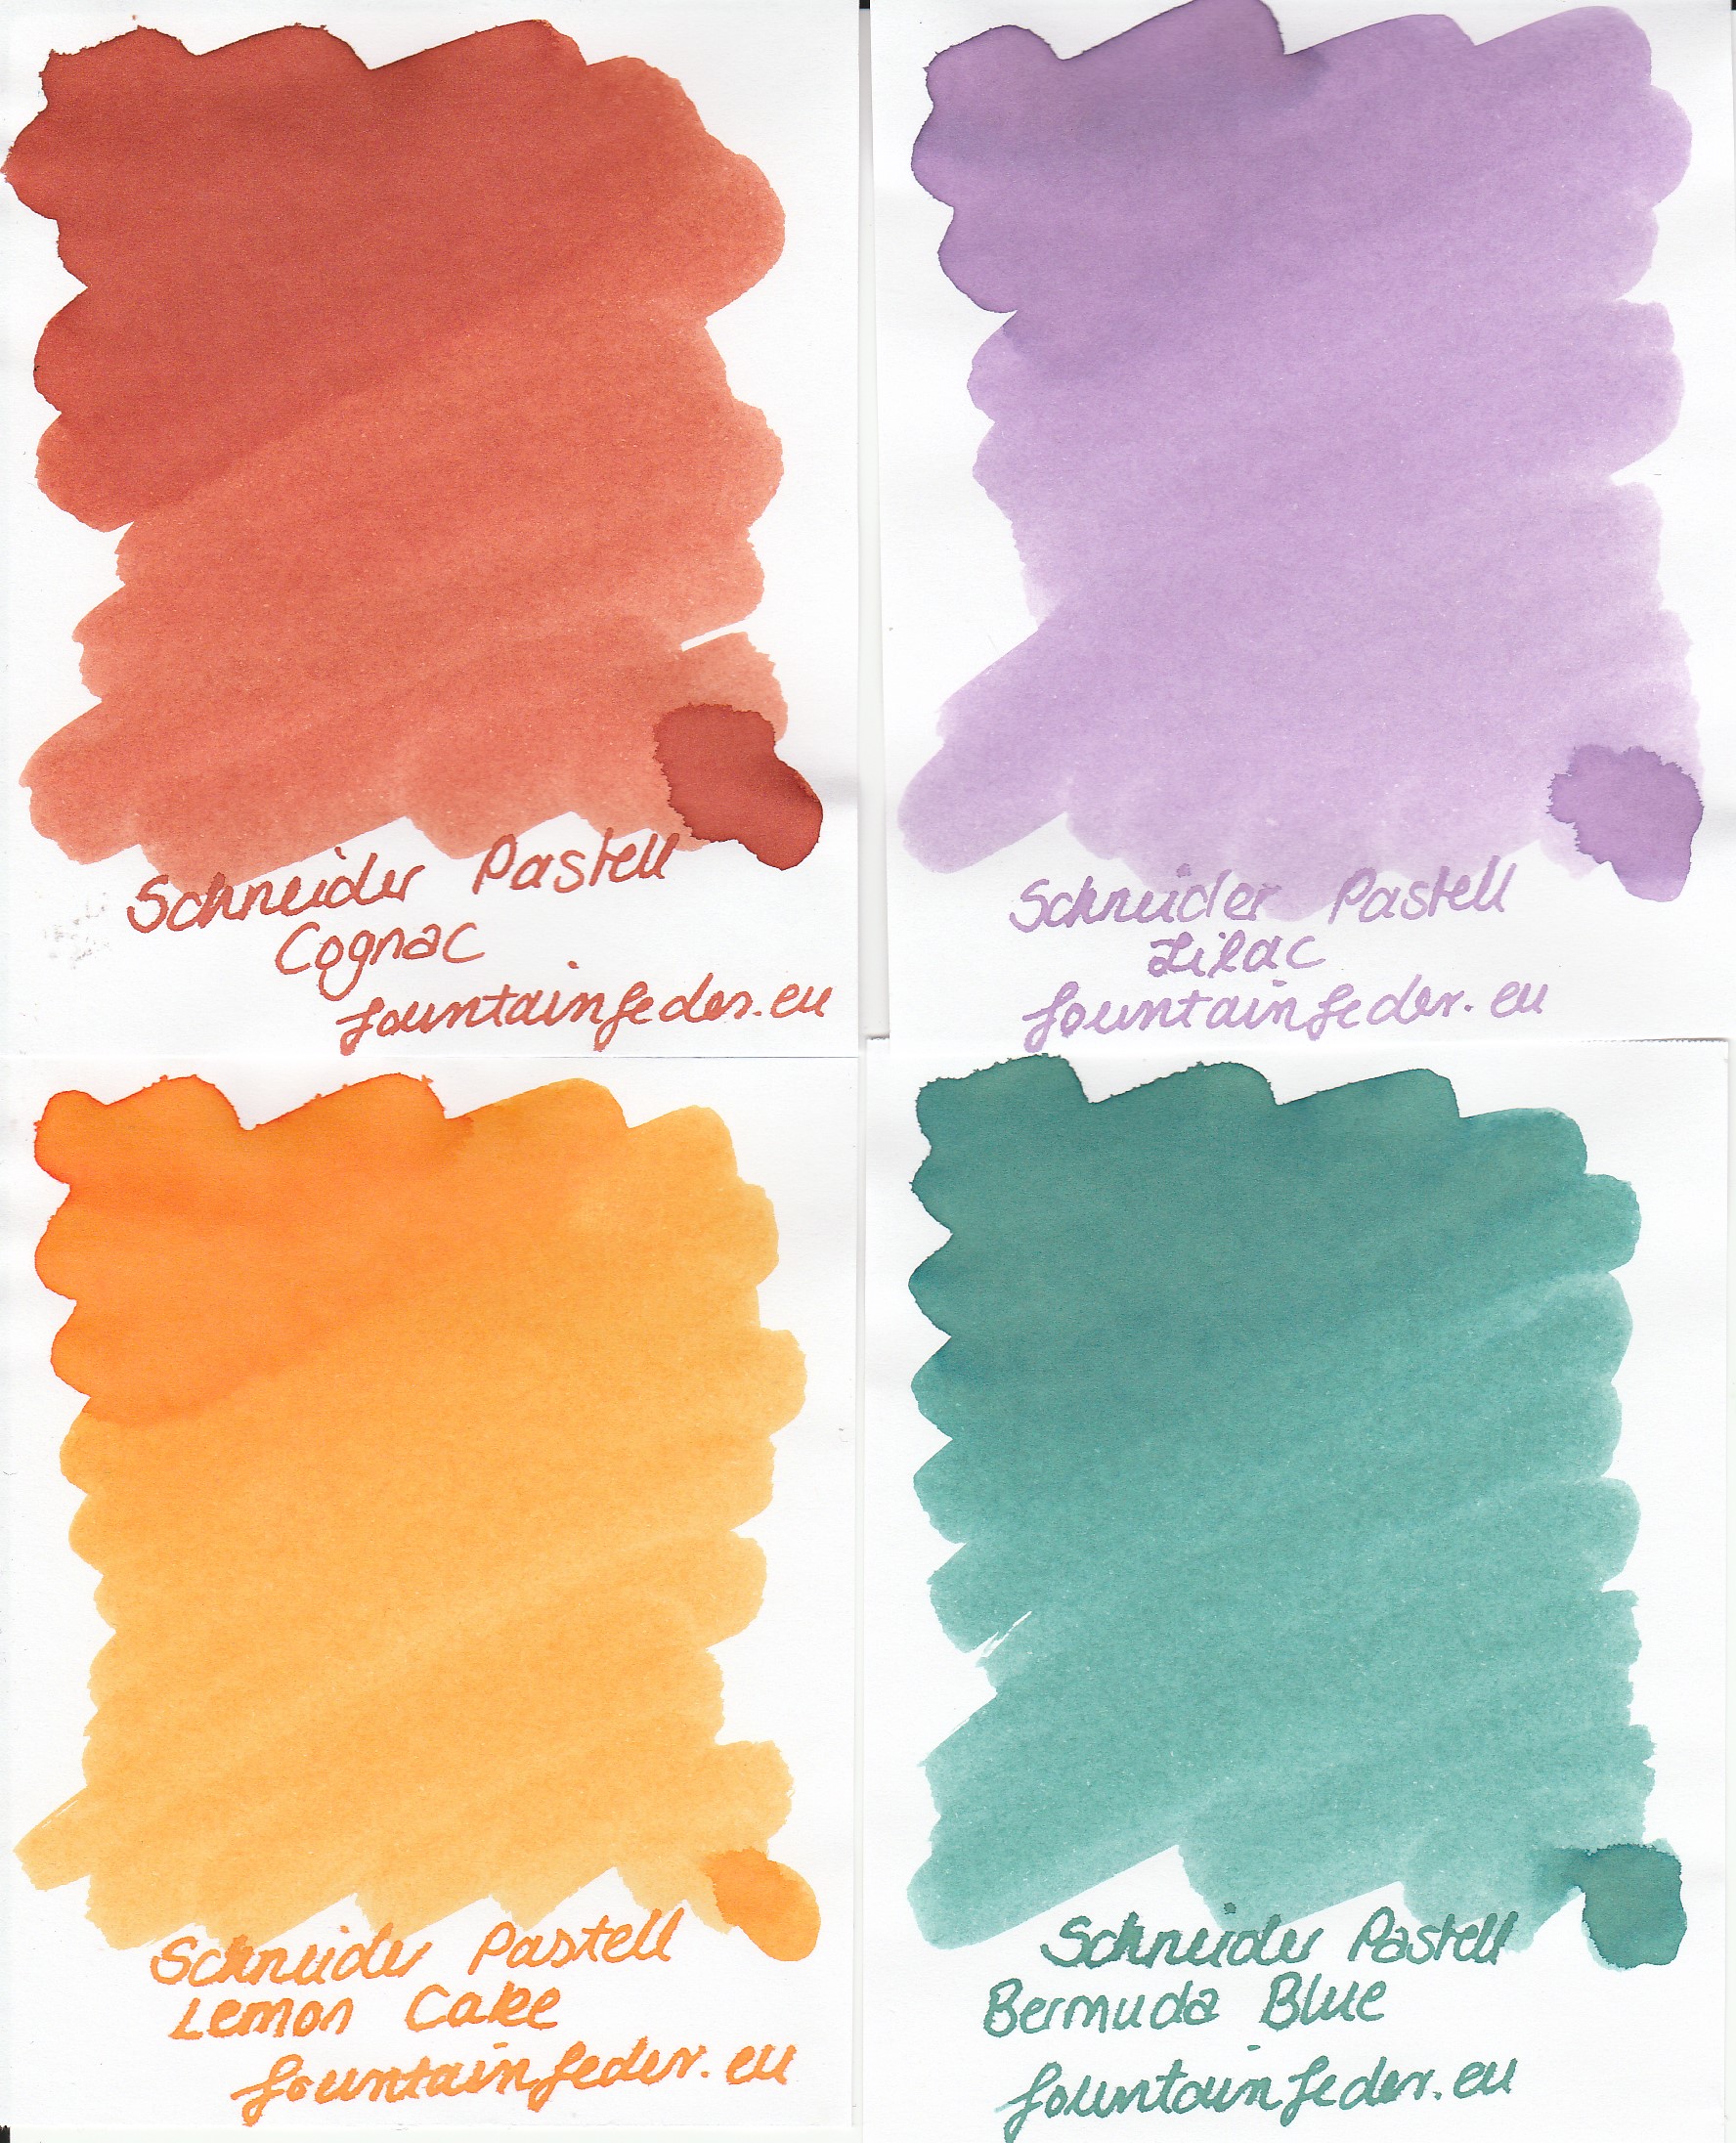 Schneider Pastell Ink Blush 15ml 